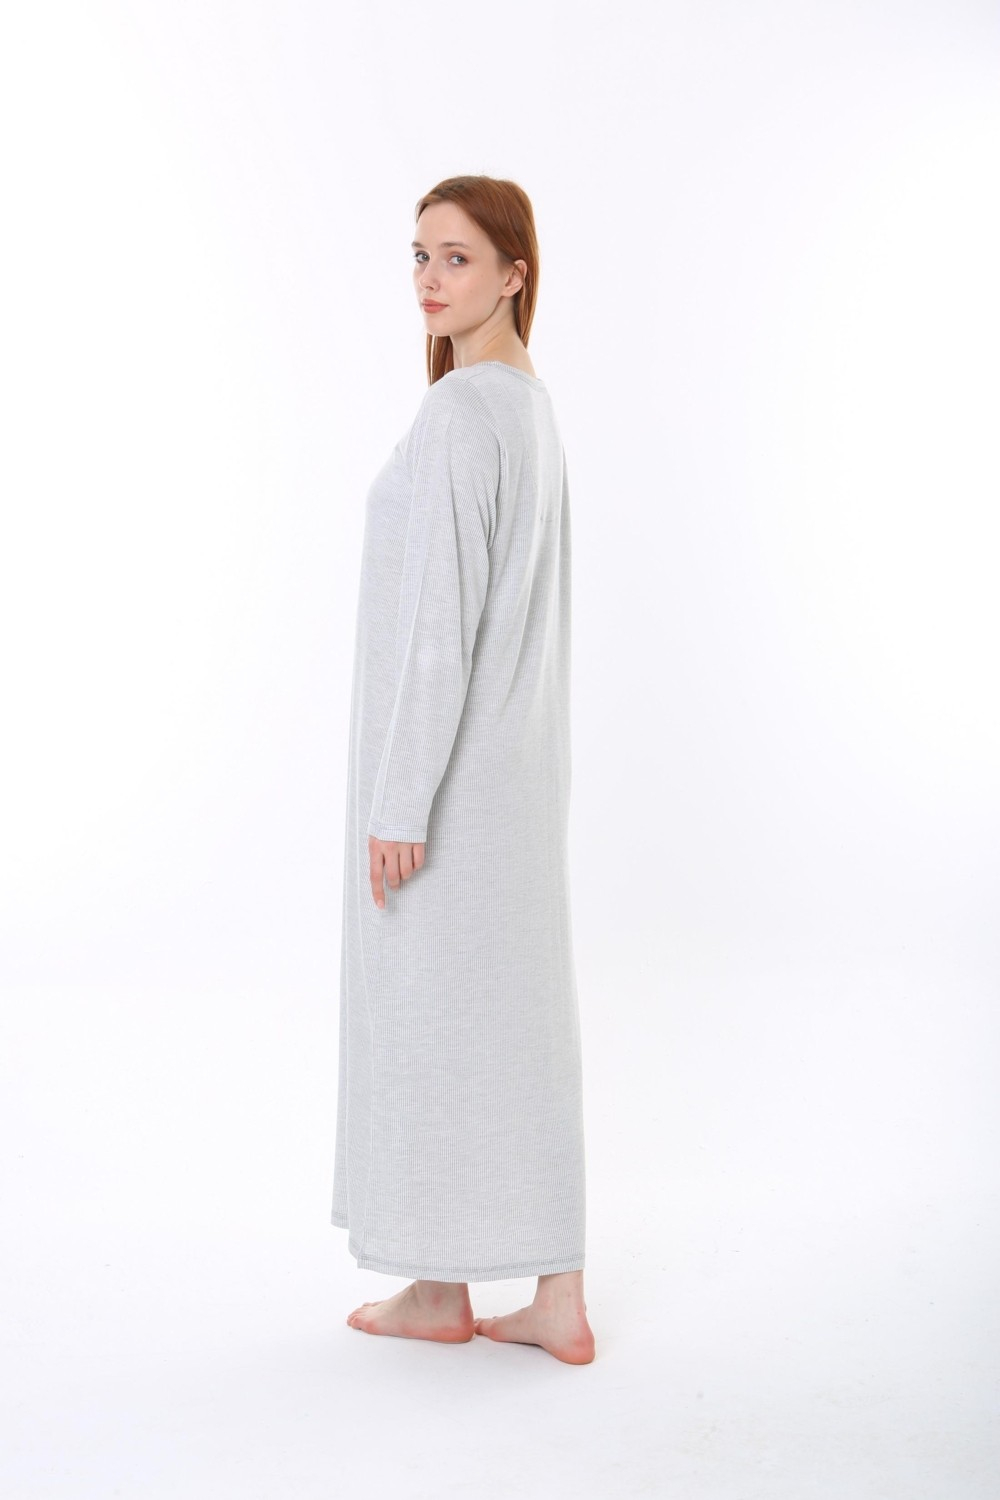 Женское ночное платье Etoile из бамбука большого размера, по желанию.